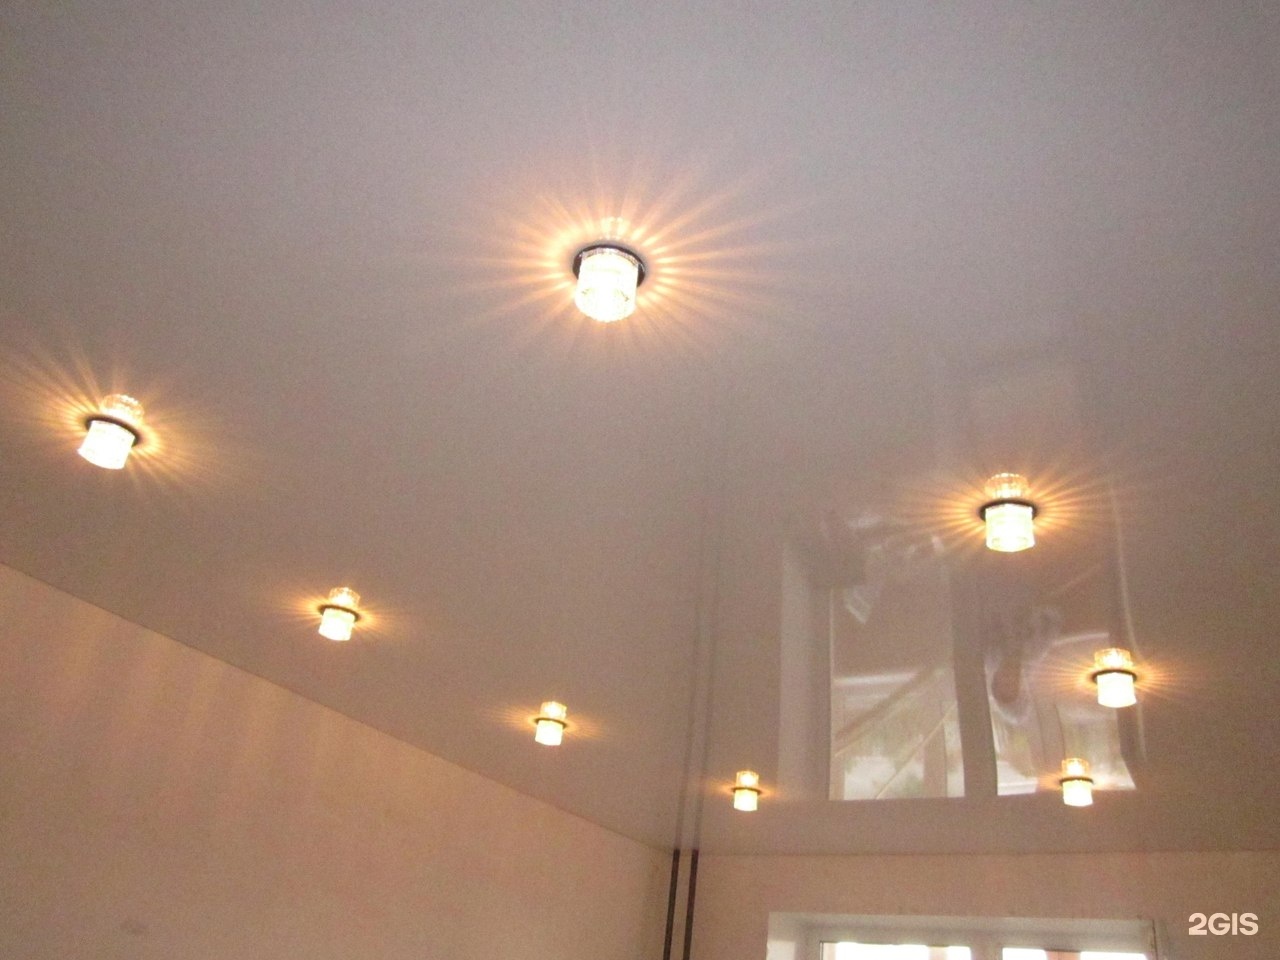 Фото натяжной потолок с точечными светильниками фото и люстрой фото